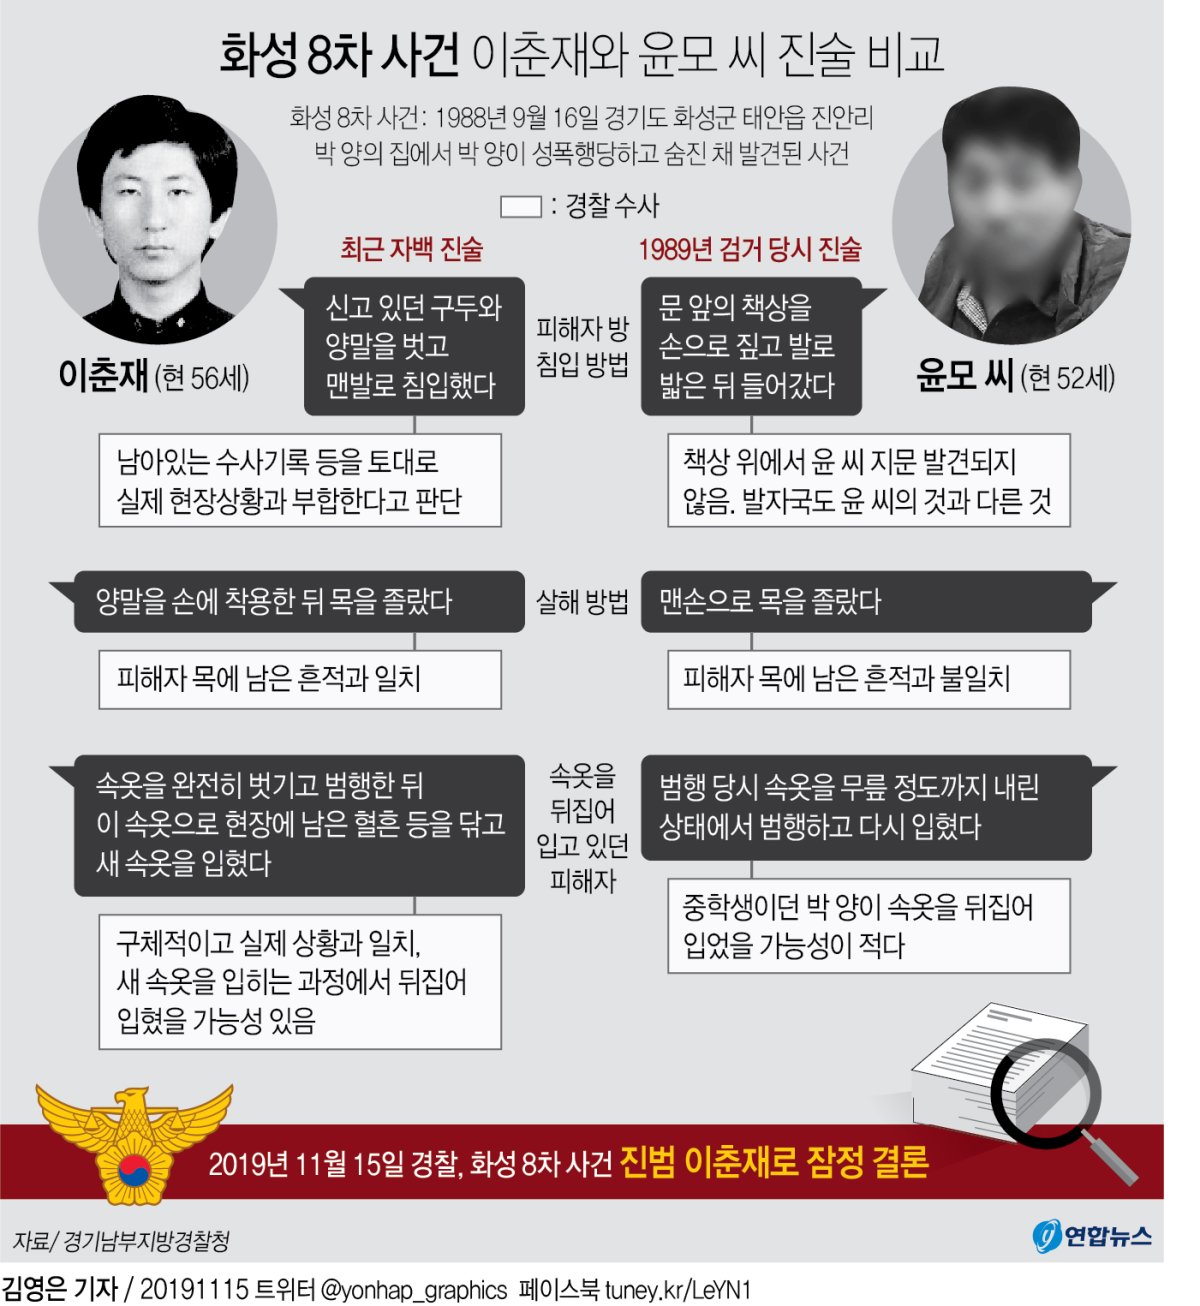 [그래픽] 화성 8차 사건 이춘재와 윤모 씨 진술 비교